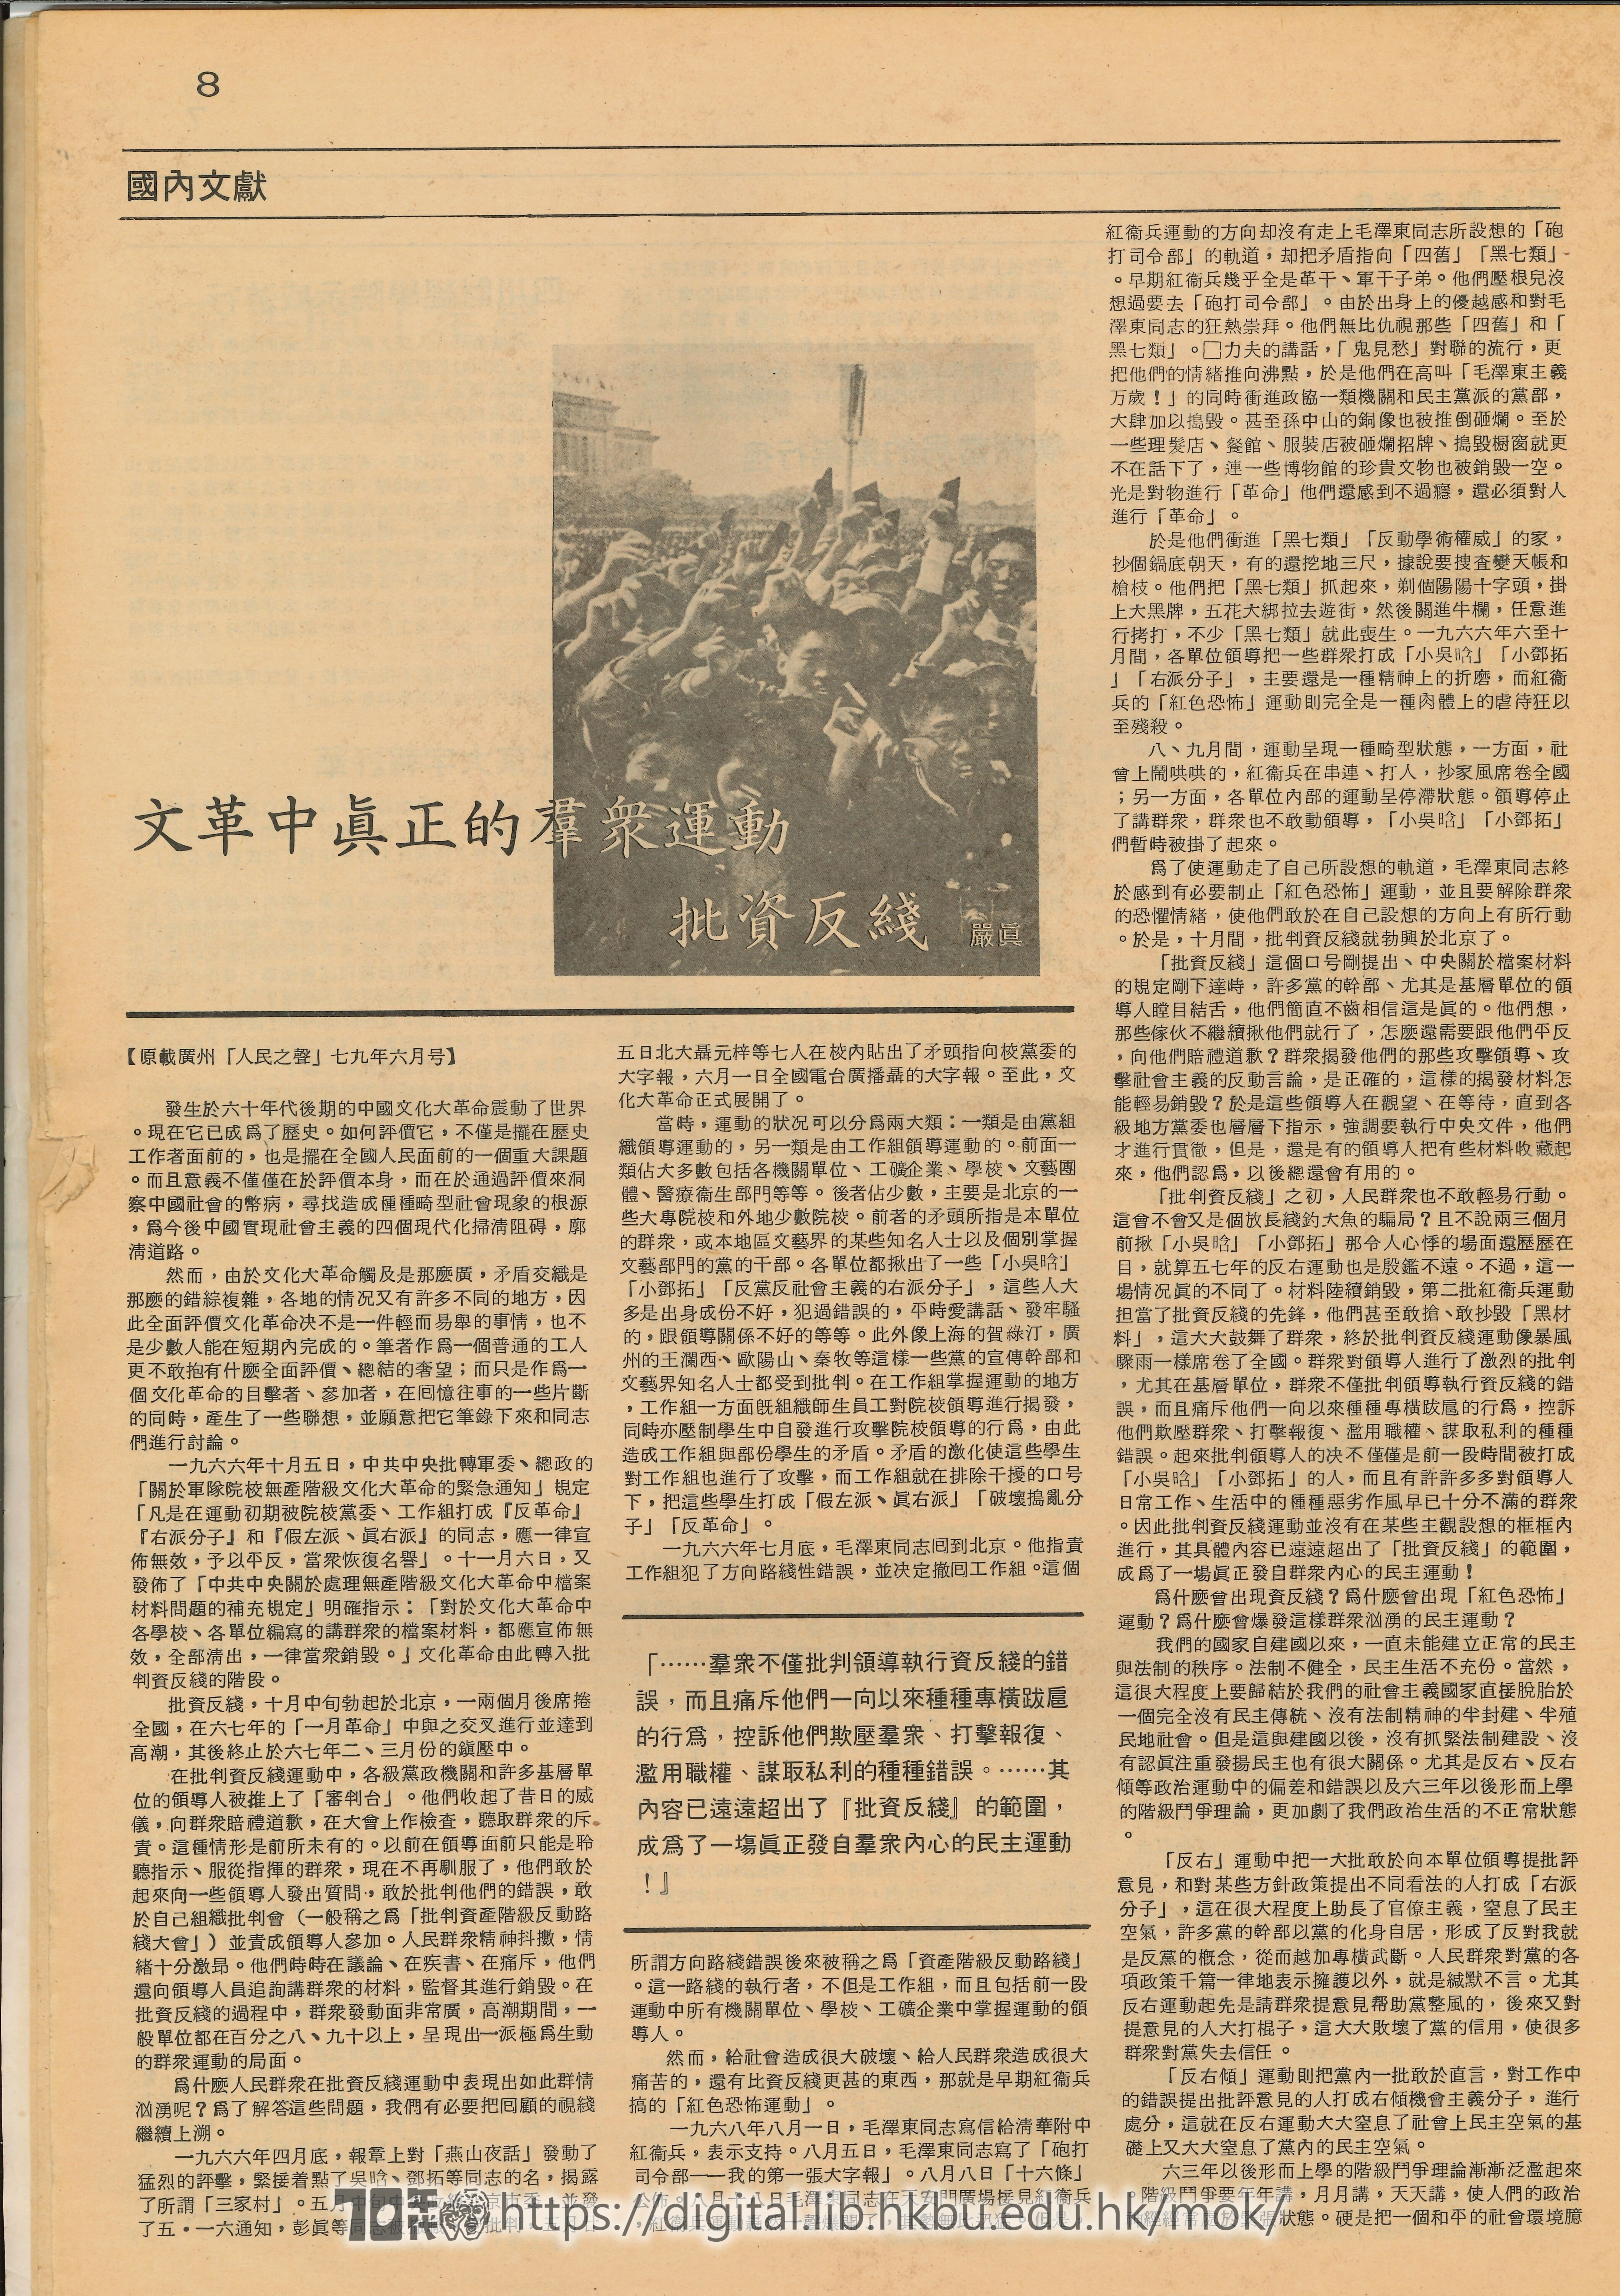   國內文獻-文革中真正的羣眾運動 批資反綫- 原載廣州「人民之聲」七九年六月号  